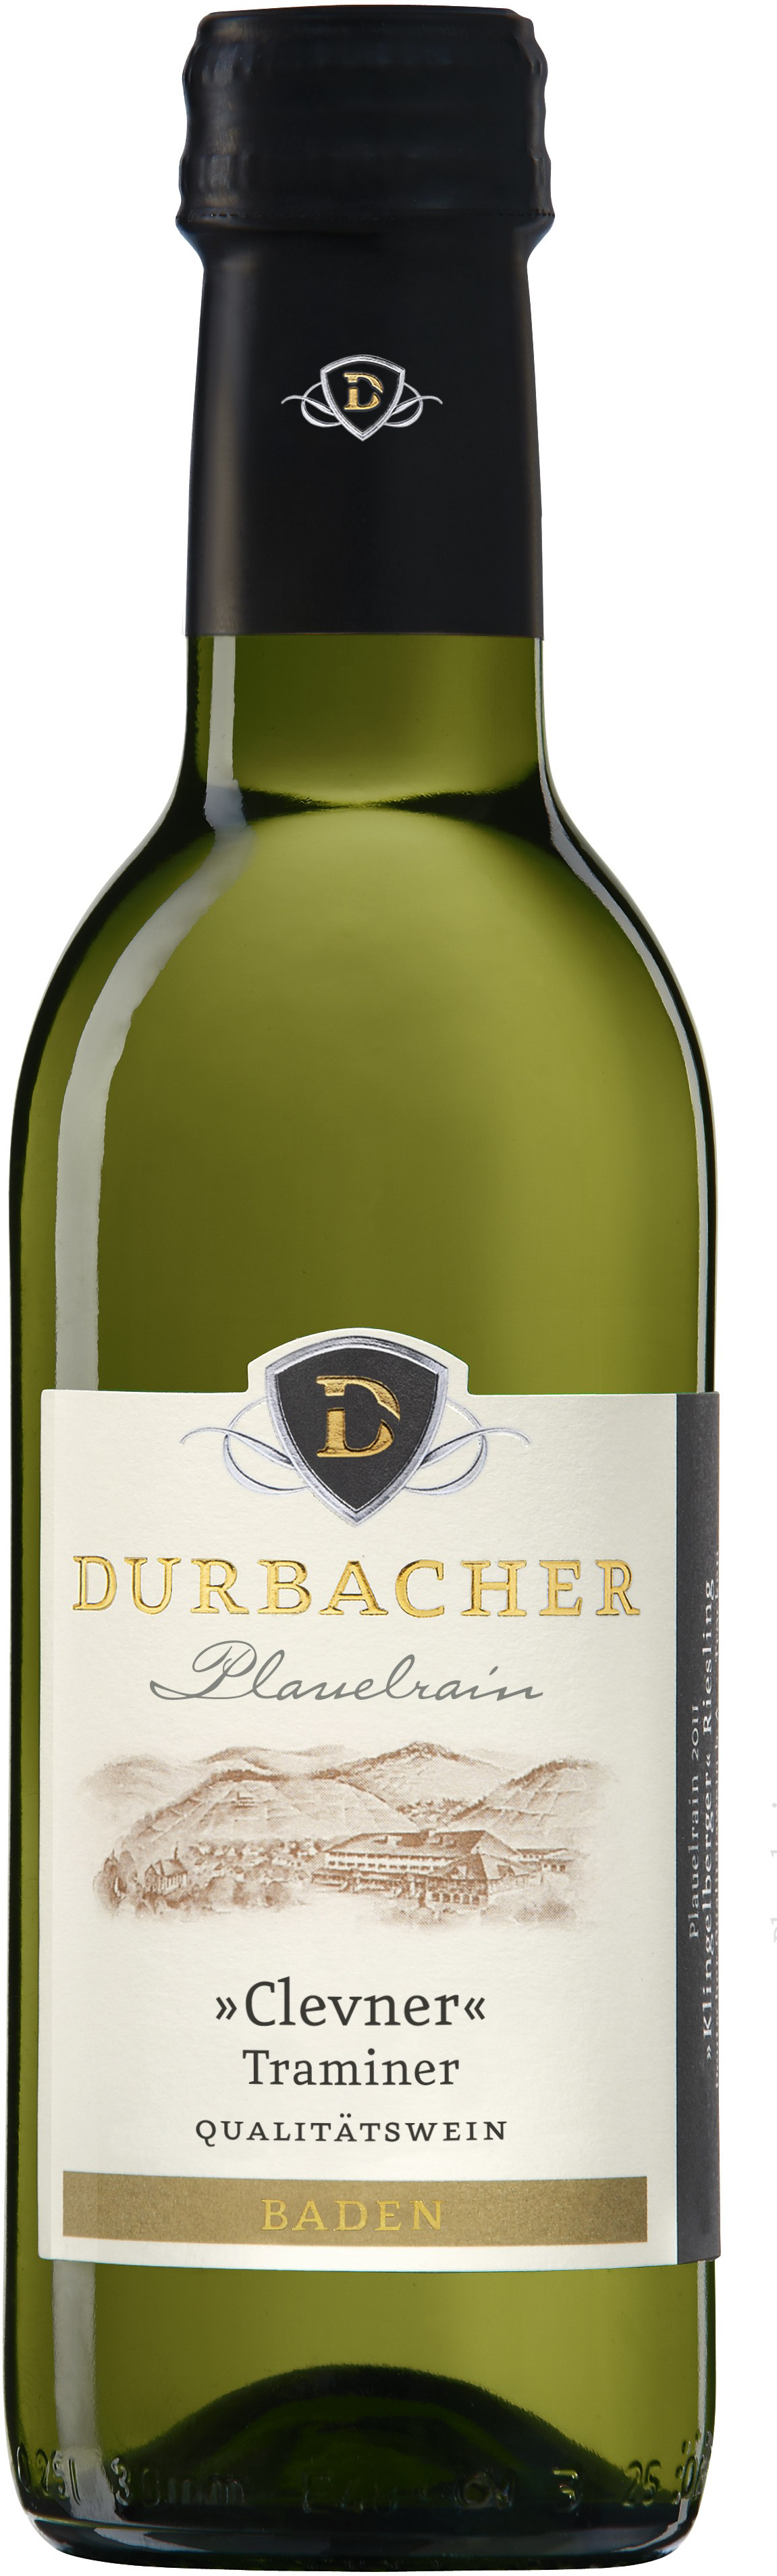 Durbacher Plauelrain Clevner (Traminer) Qualitätswein